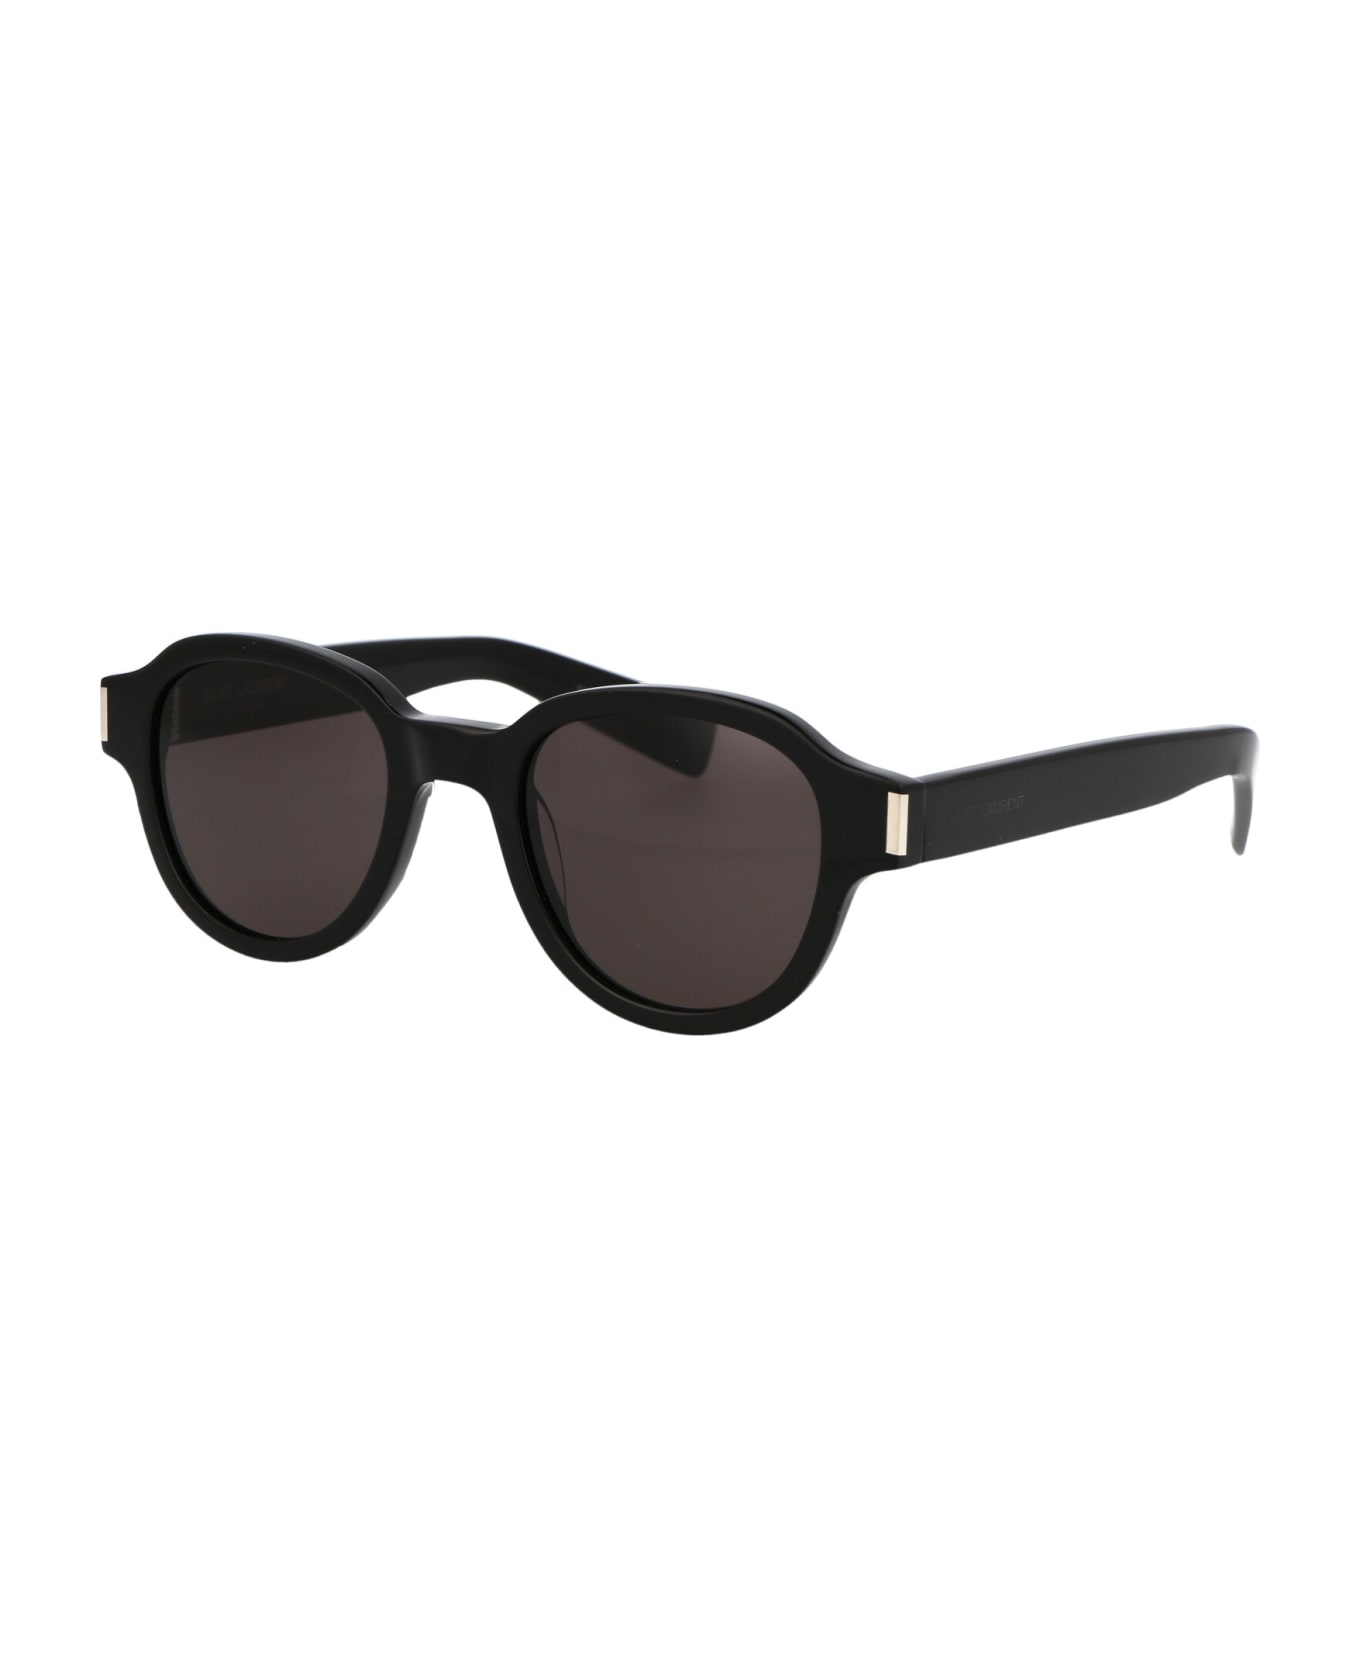 Saint Laurent Eyewear Sl 546 Sunglasses - 001 BLACK BLACK BLACK サングラス